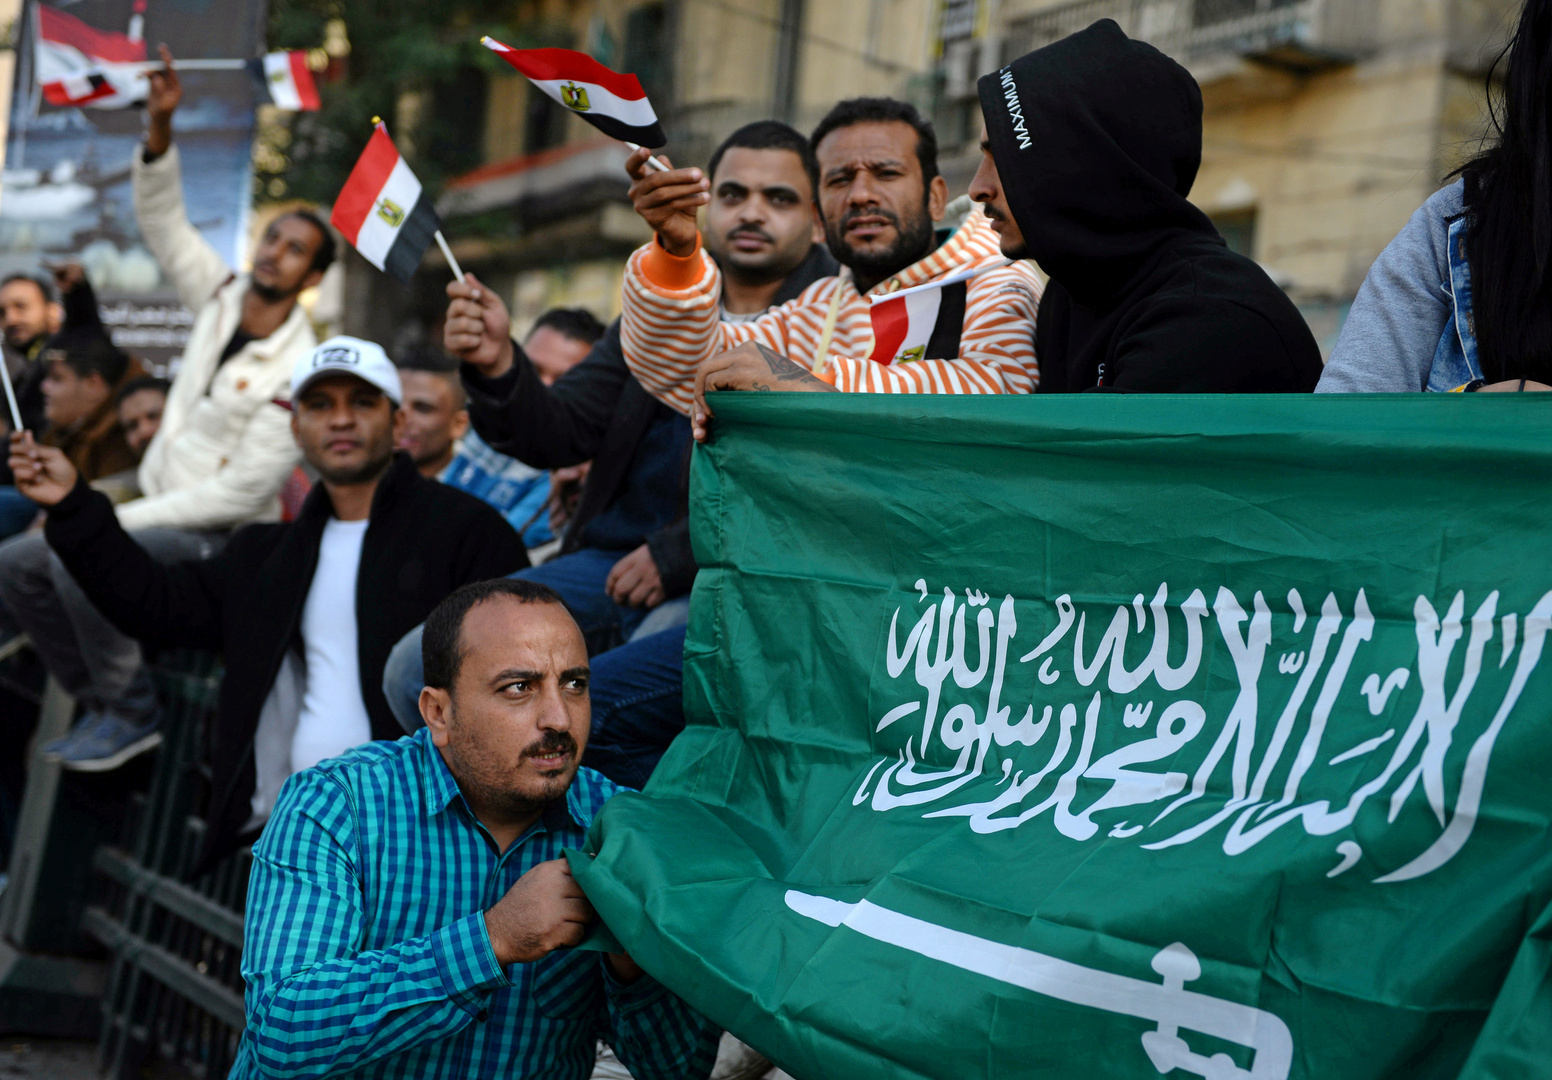 تحذير جديد في مصر للمتجهين إلى السعودية